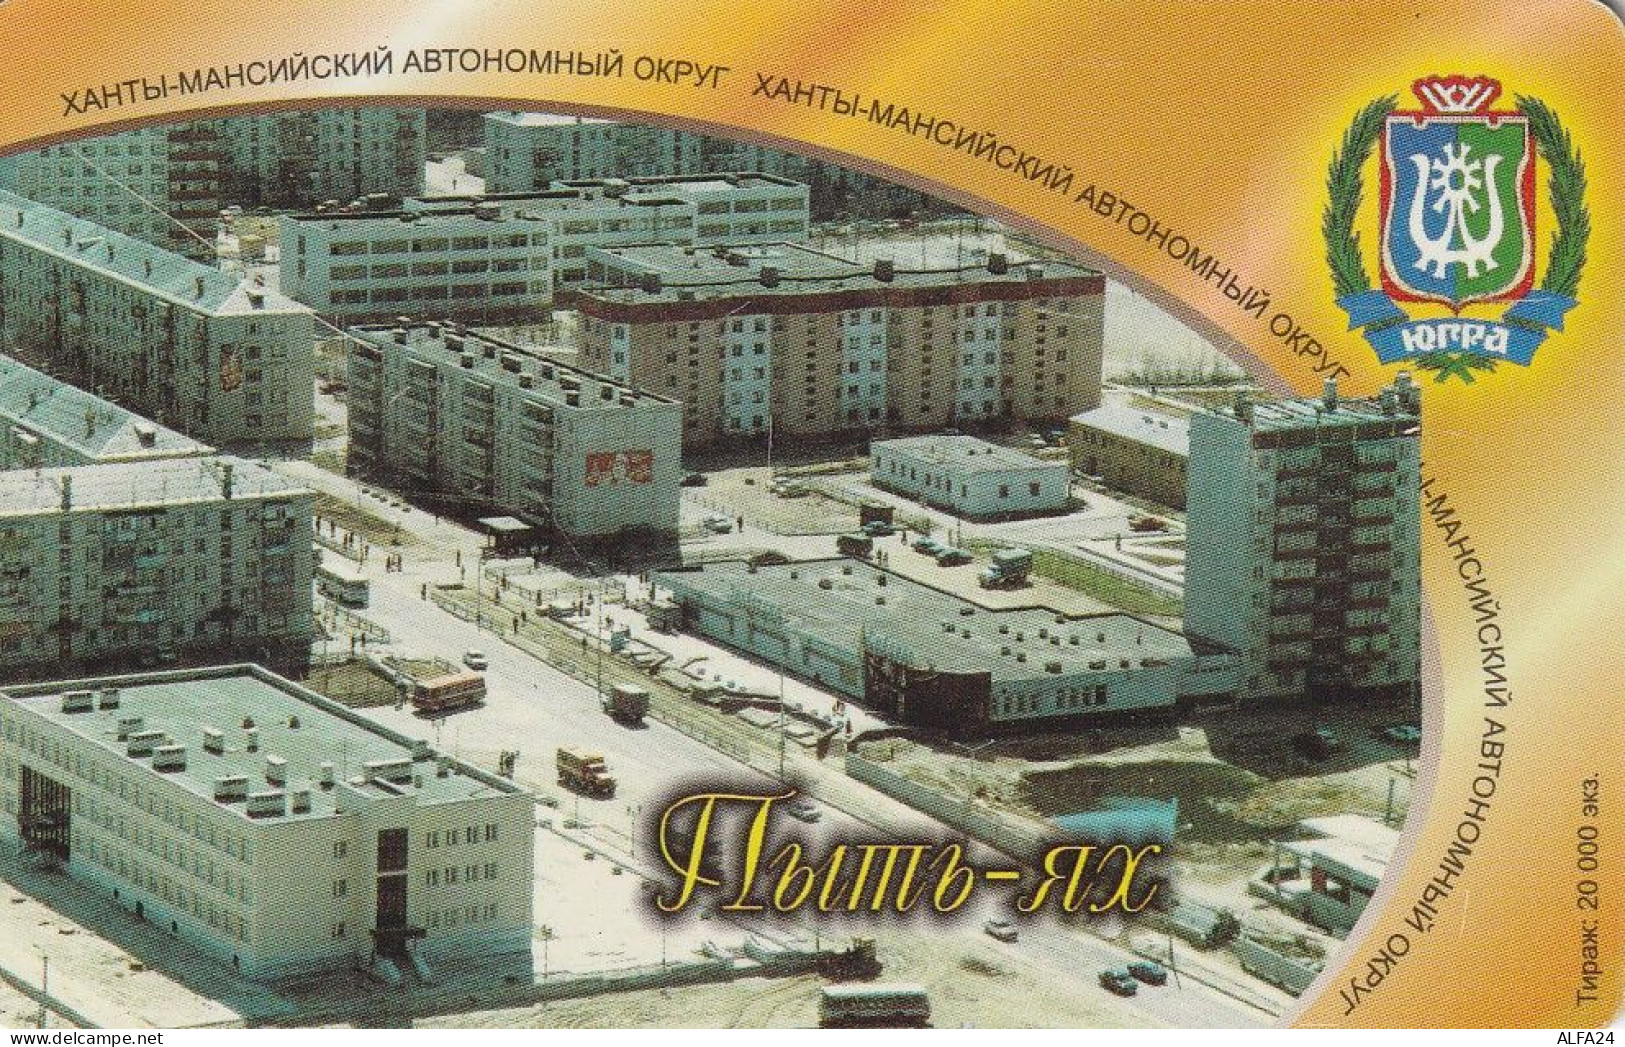 PHONE CARD RUSSIA Khantymansiyskokrtelecom (E9.18.5 - Russia